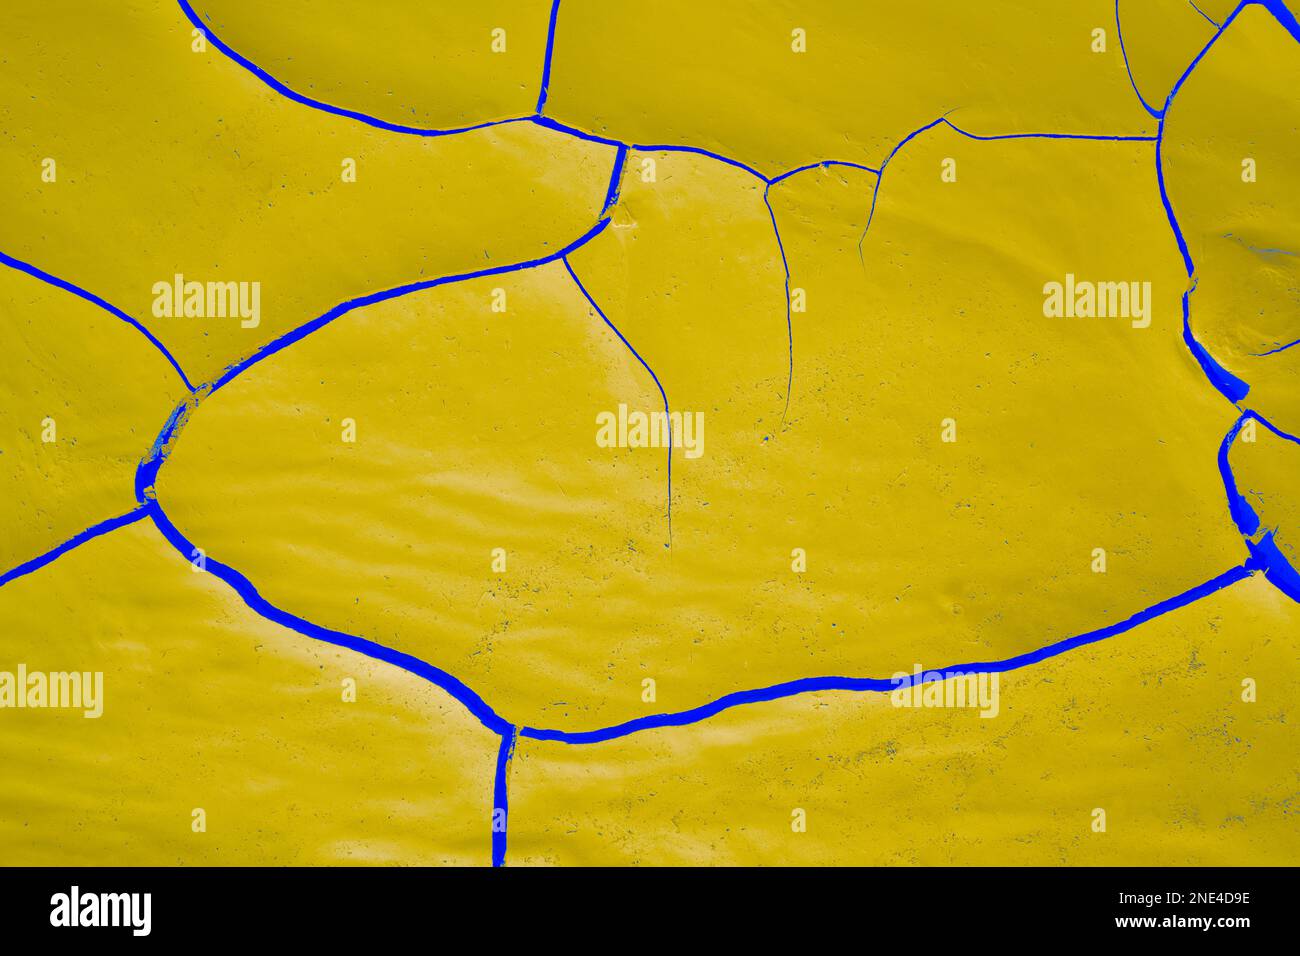 Dynamique audacieux résumé motifs colorés de boue séchée dans un lit de rivière sec en jaune, bleu. Concepts de l'espace de copie et commercial. Rivière Swakop, Namibie Banque D'Images